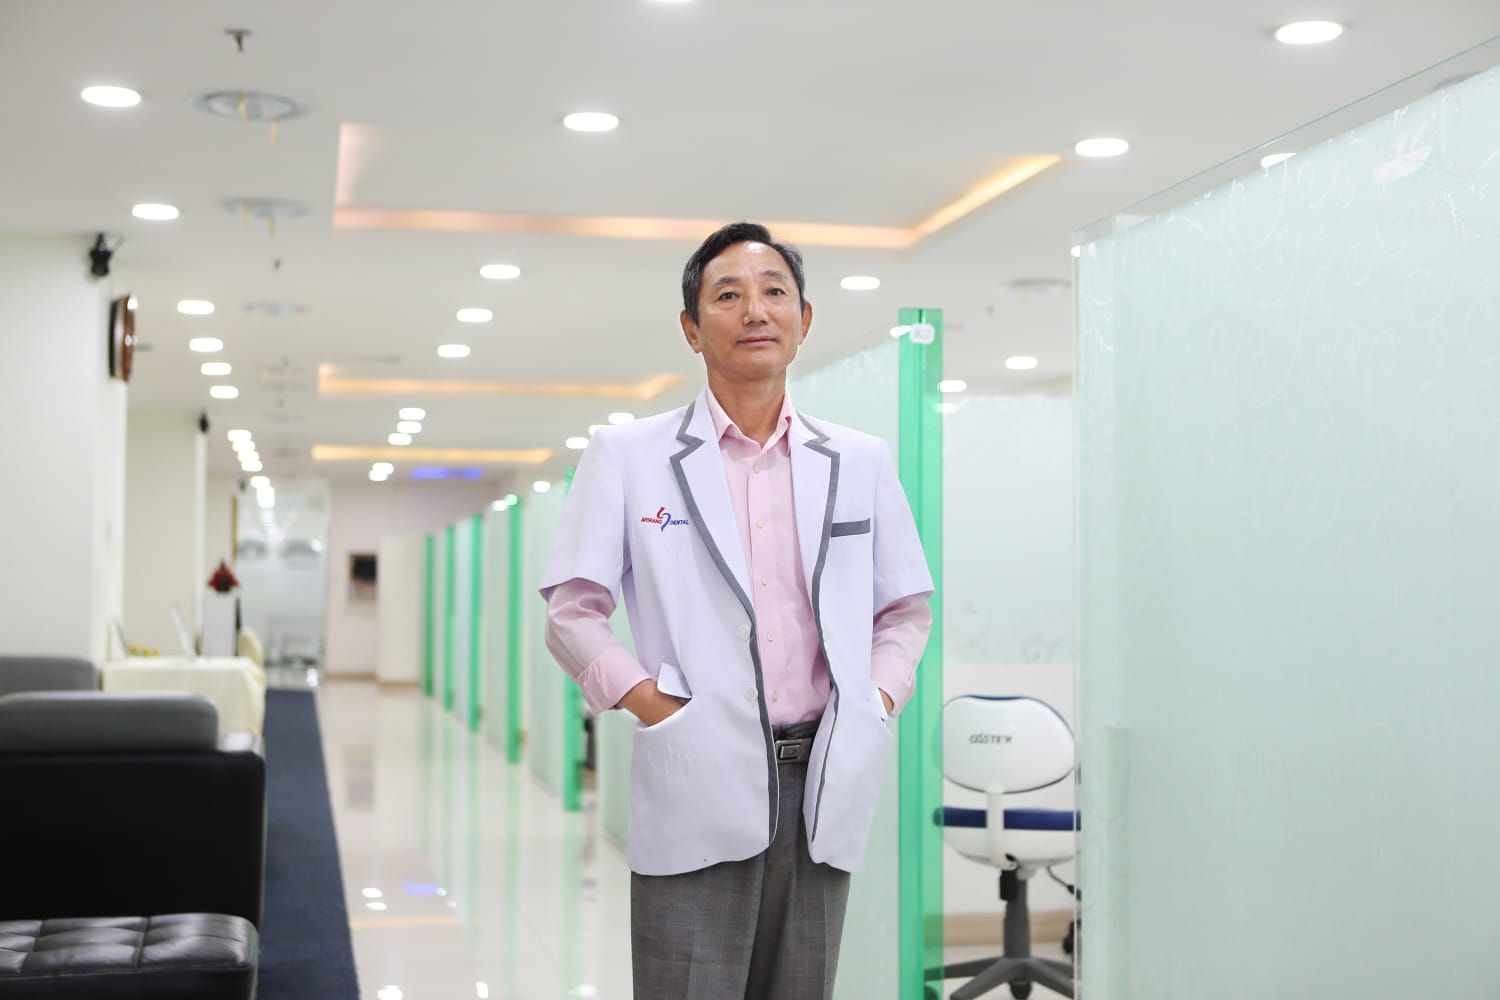 Atasi Masalah Gigi, Klinik Ini Datangkan Drg. Kim Seong Seon Dari Korea